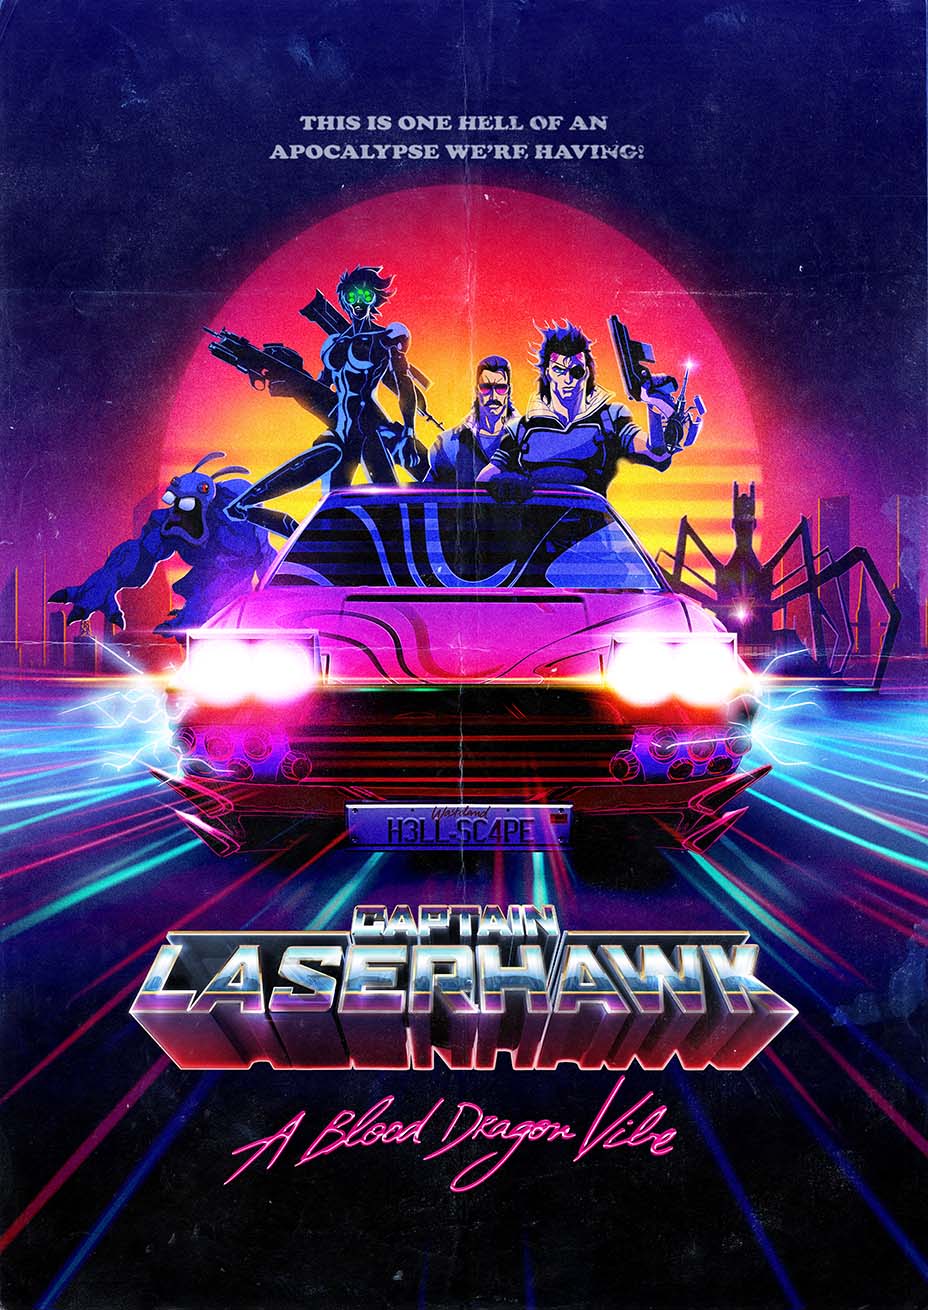 Captain Laserhawk Show